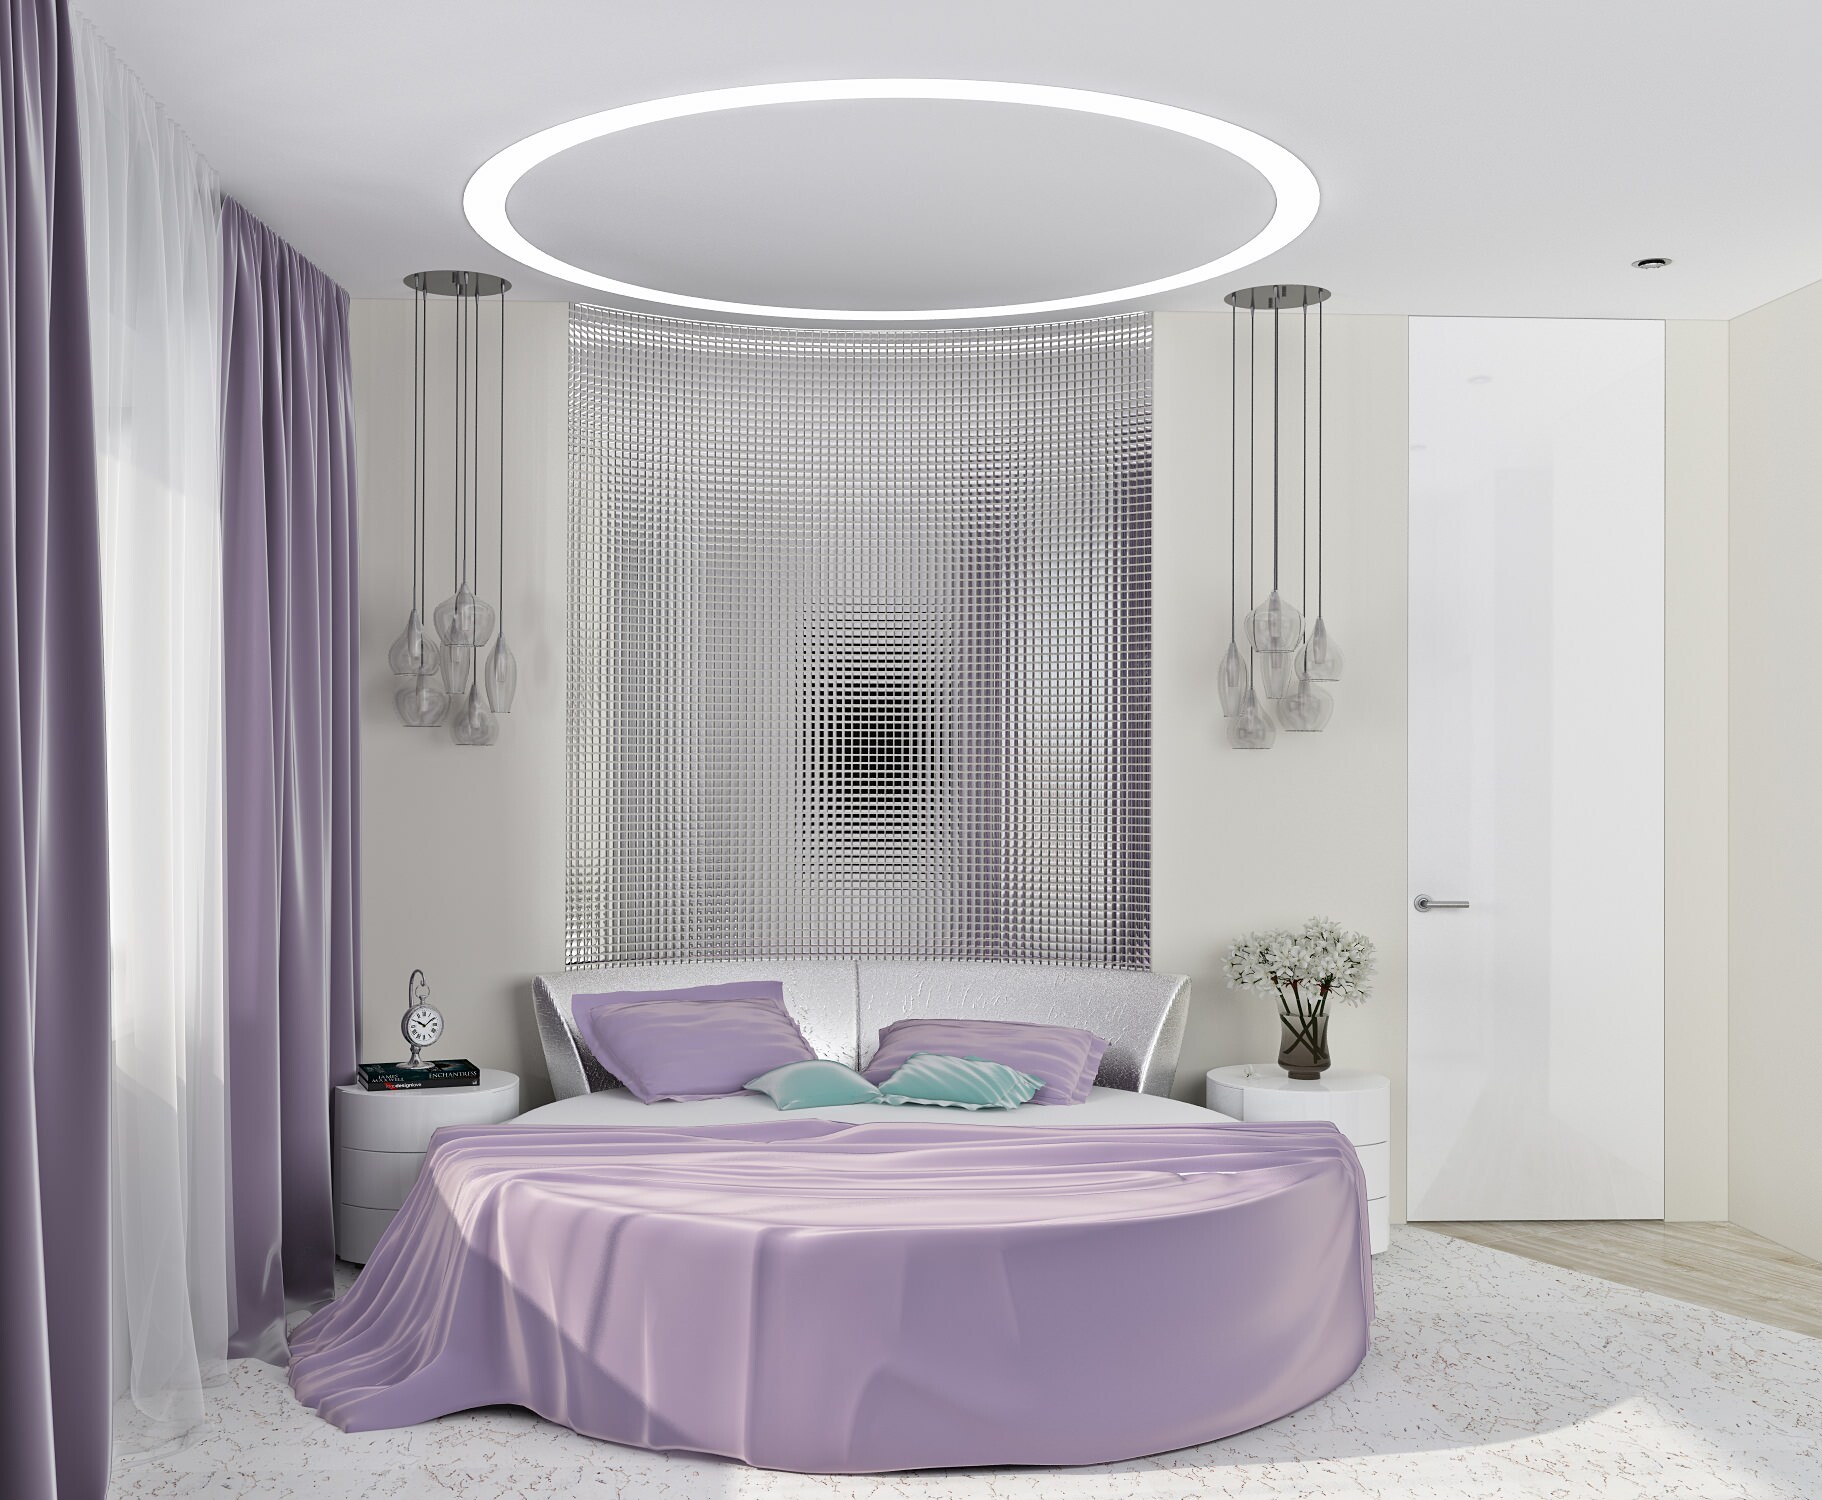 Интерьер спальни cветовыми линиями, подсветкой светодиодной, светильниками над кроватью и с подсветкой